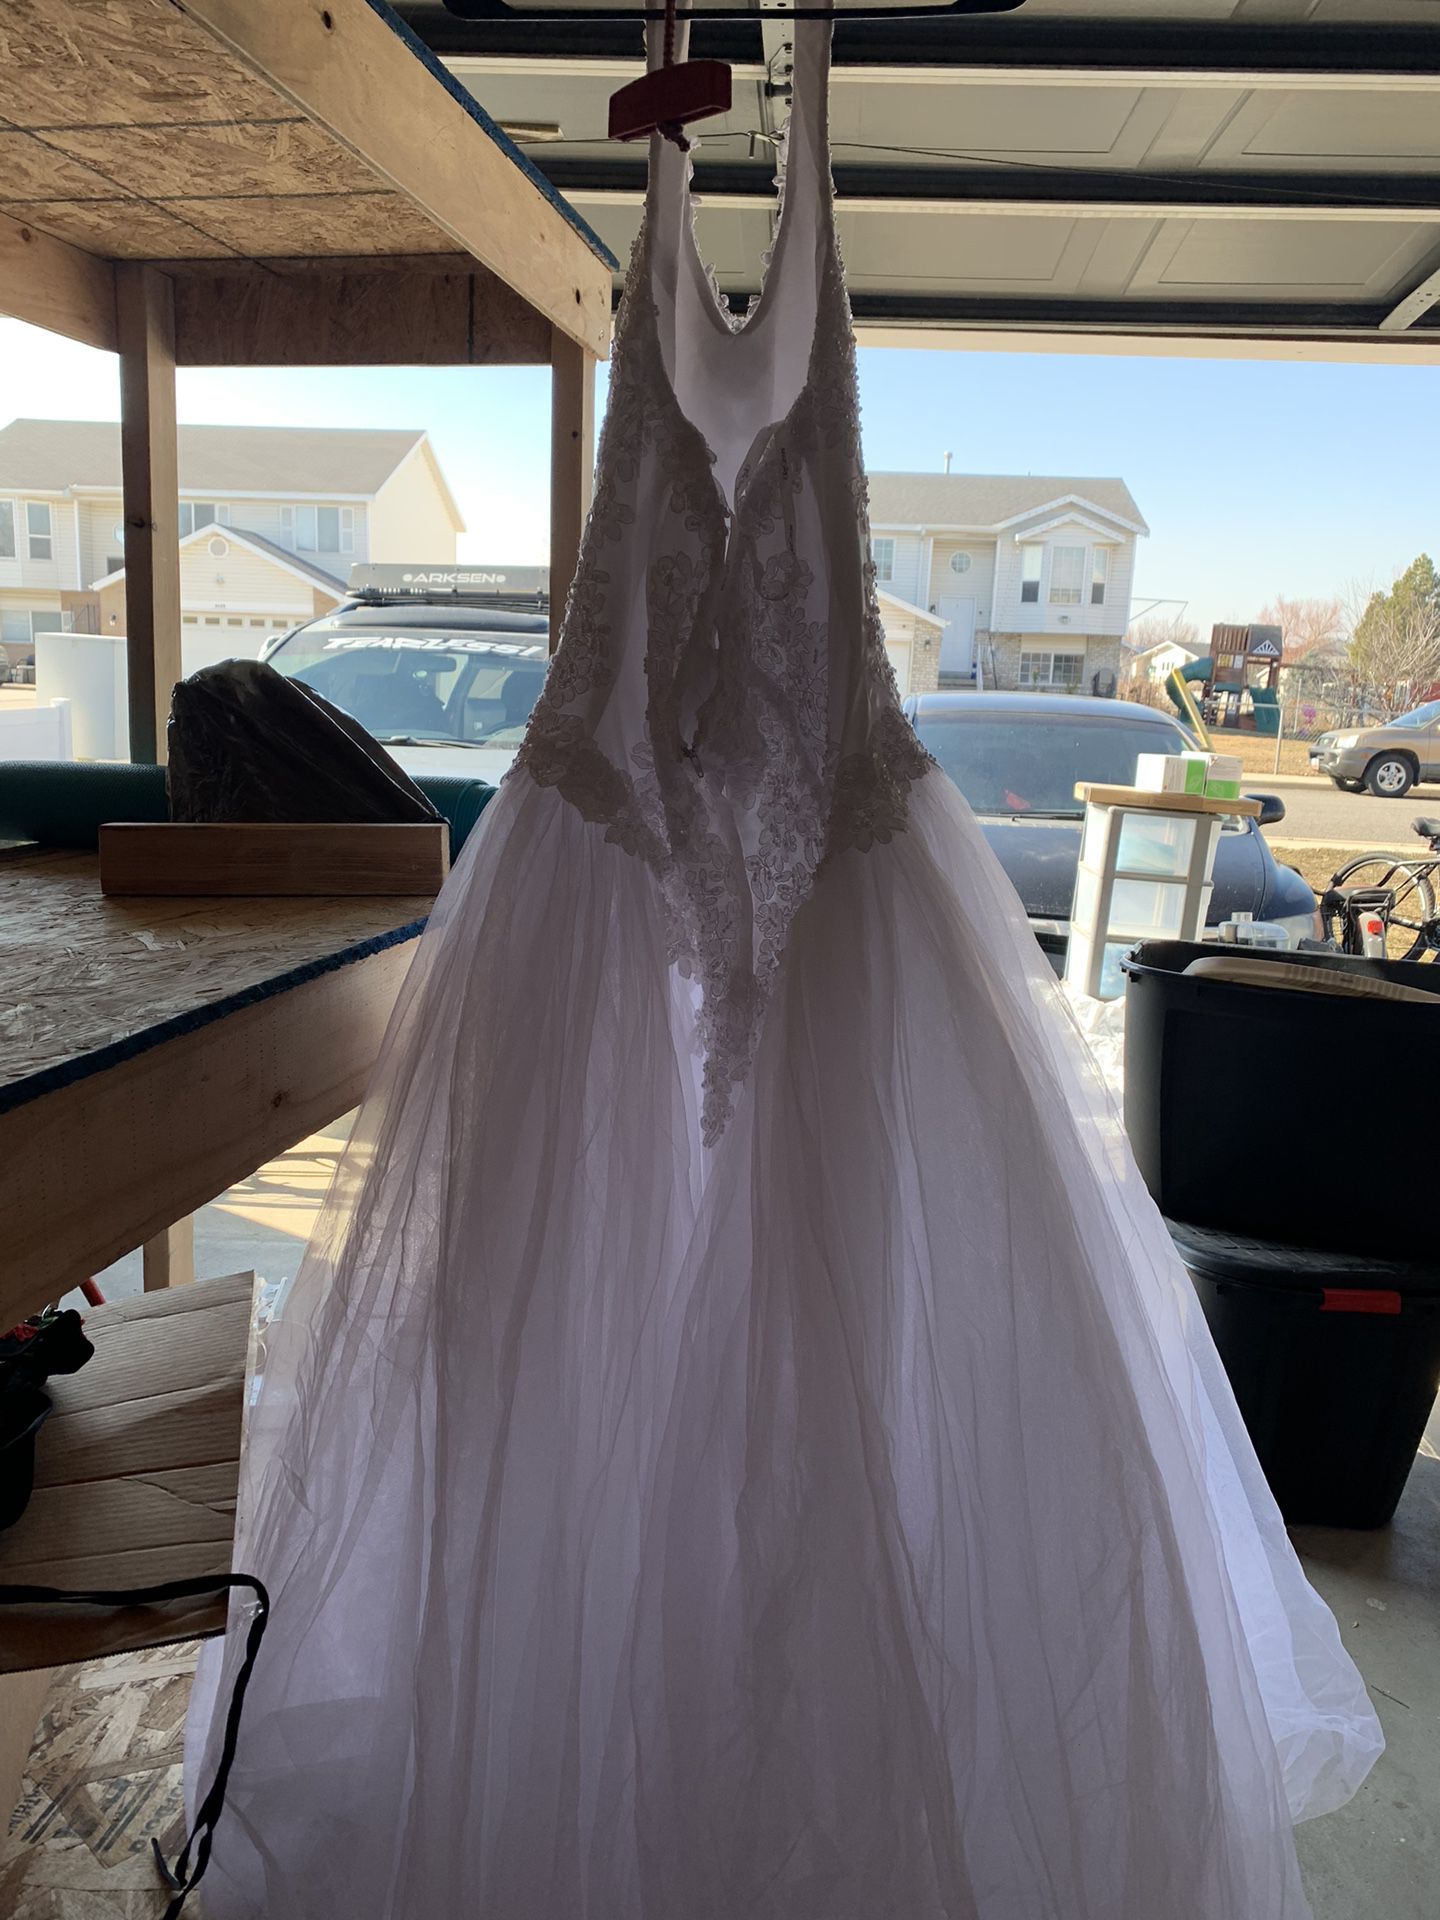 Wedding Dress Size 18 New